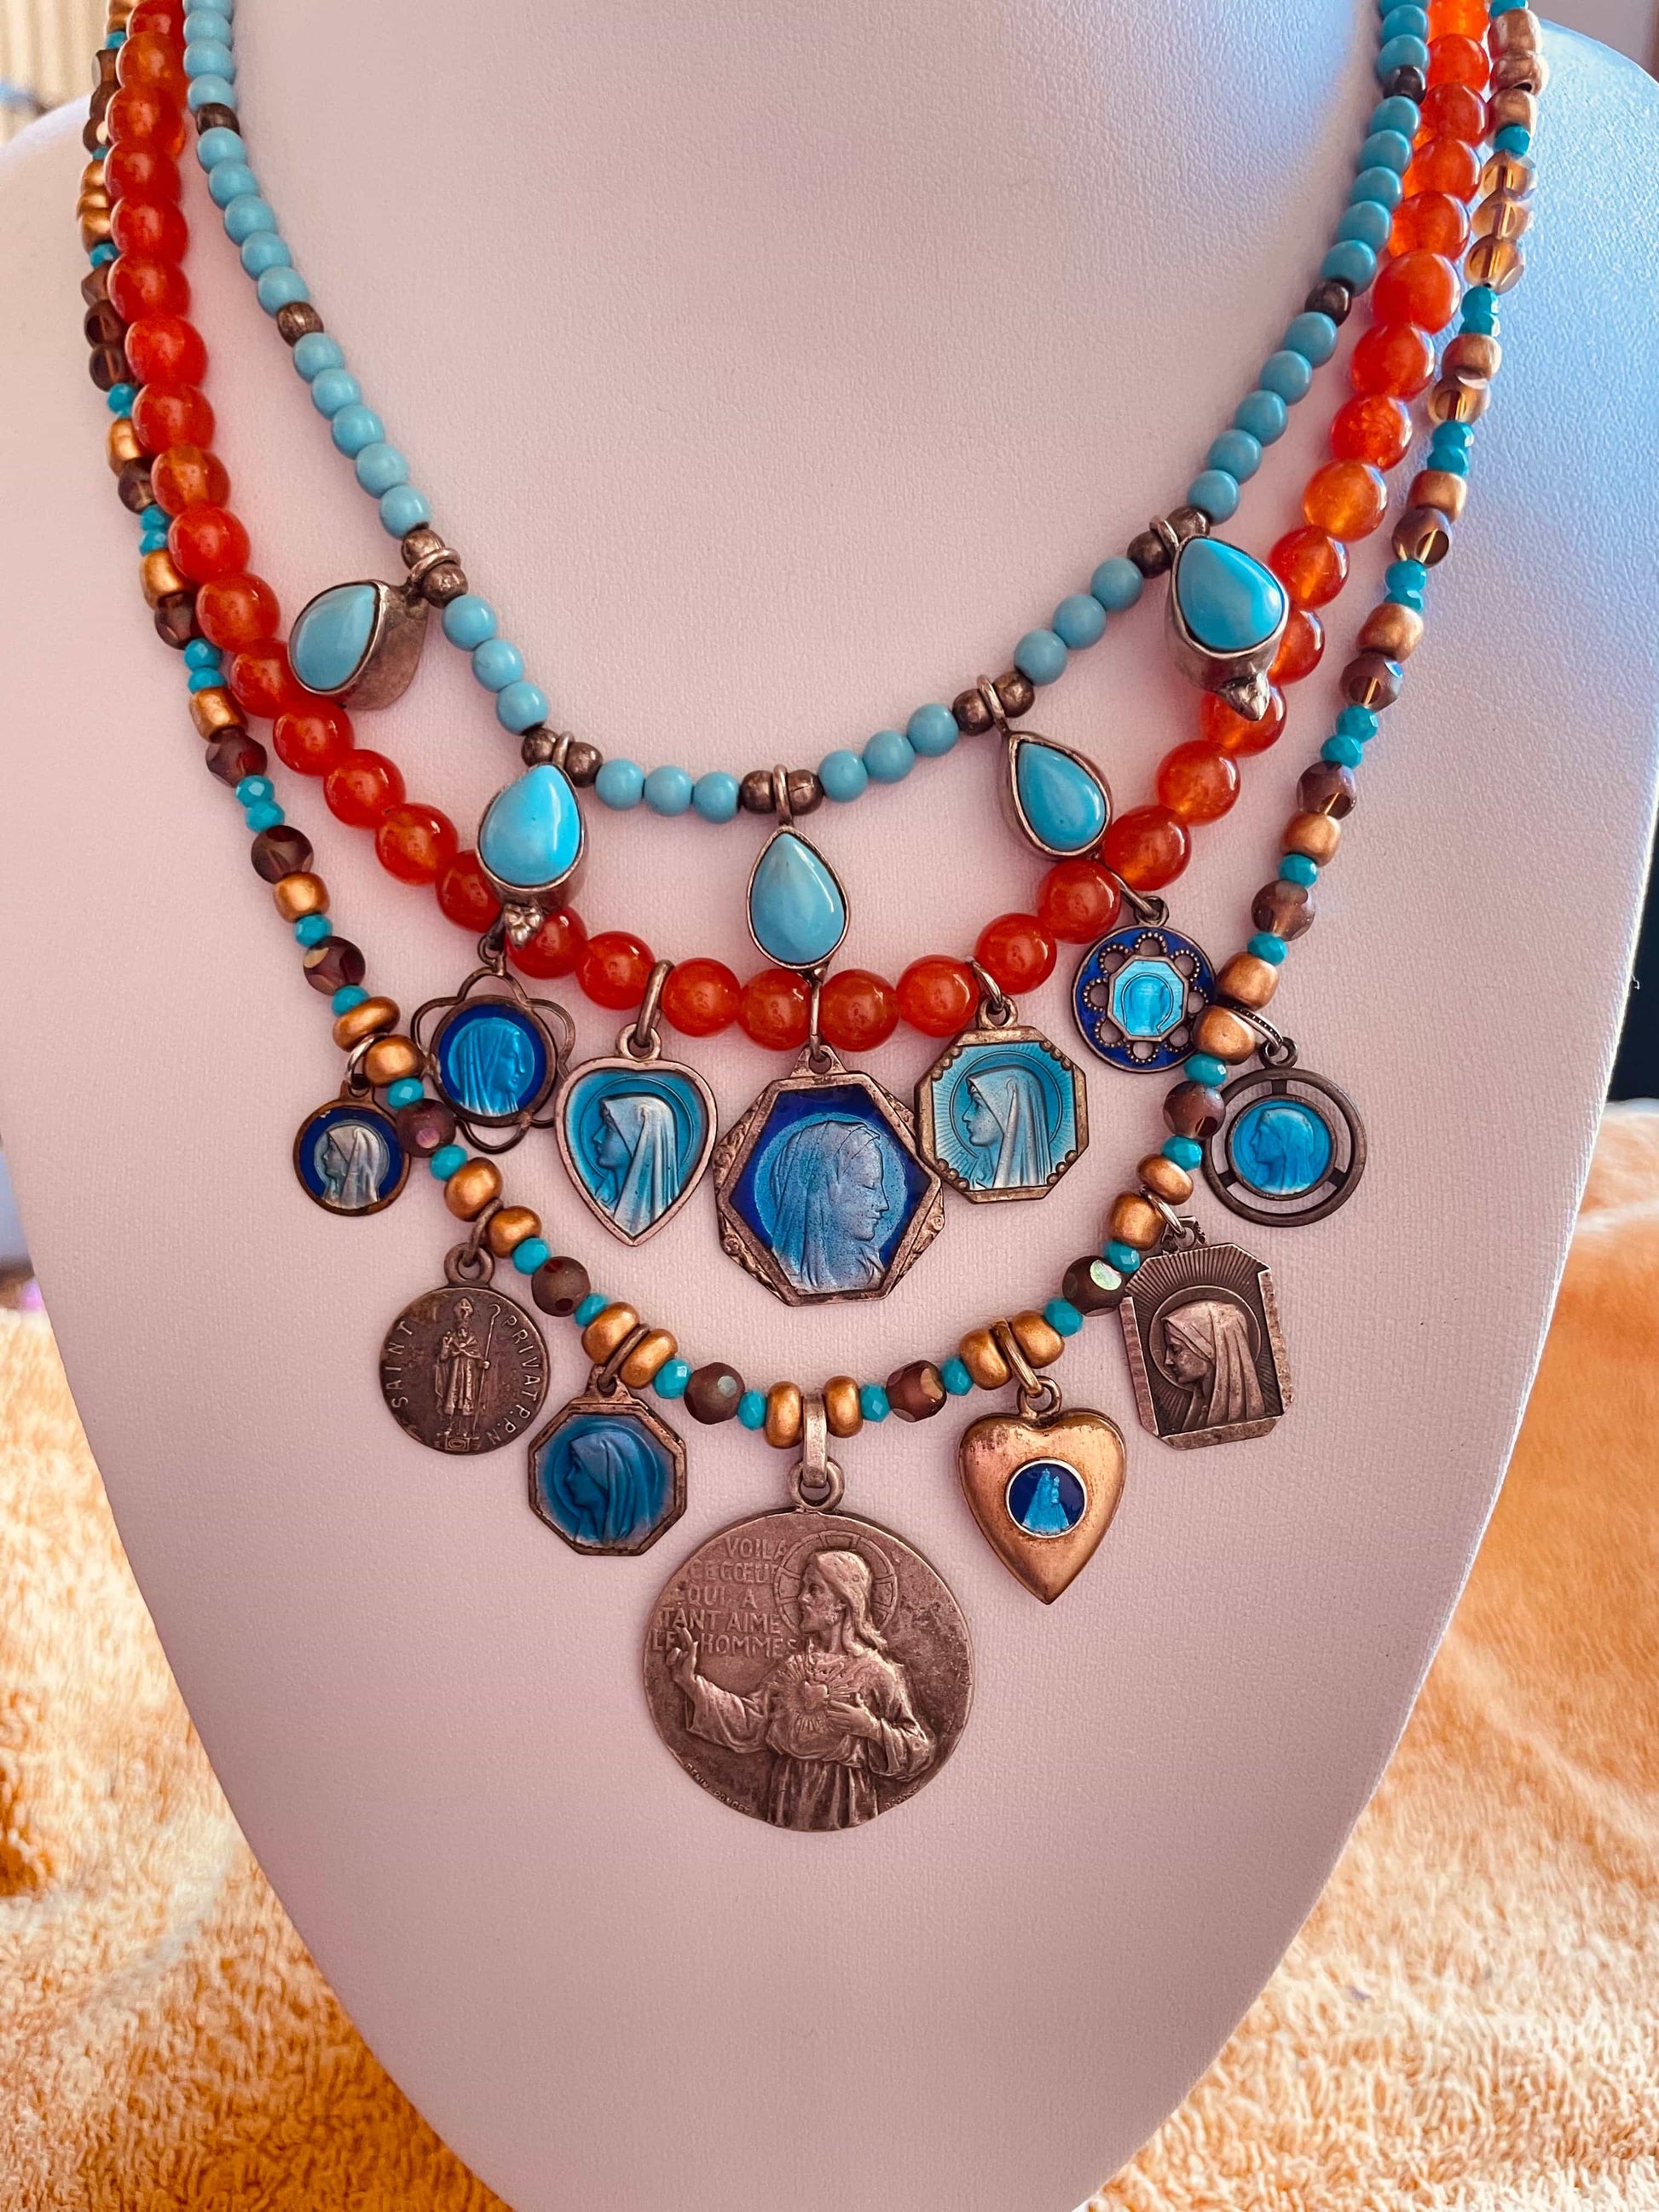 lenu-necklace-valentina-capuleti-antiquario-medaglia-antica-medaglia-vecchia-medaglia-vintage-medalla-antigua-vintage-jewelry-vintage-jewels-vintage-madonna-west-germany-2